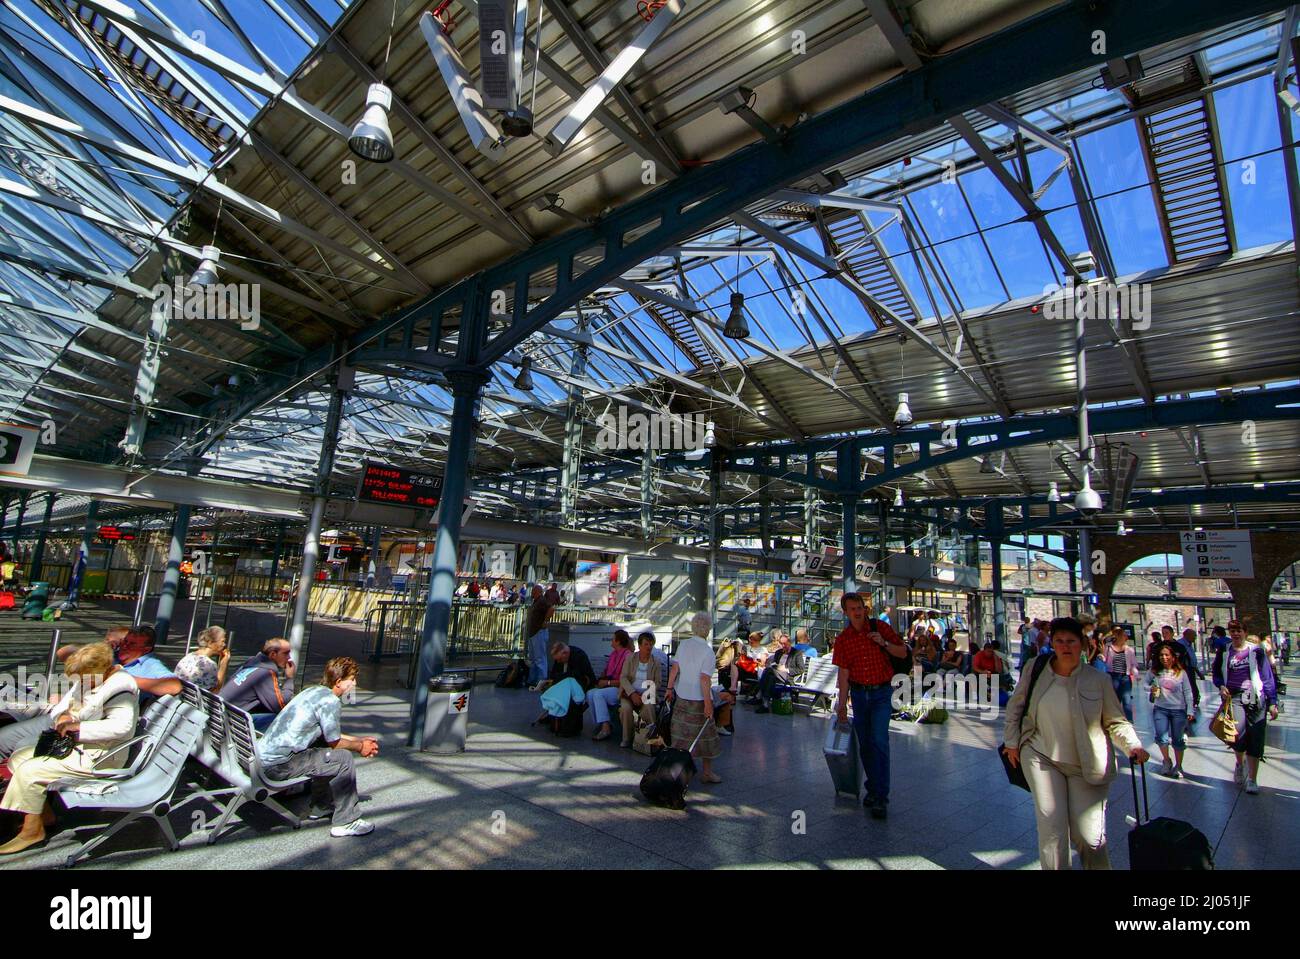 Heuston station Dublin Ireland Stock Photo